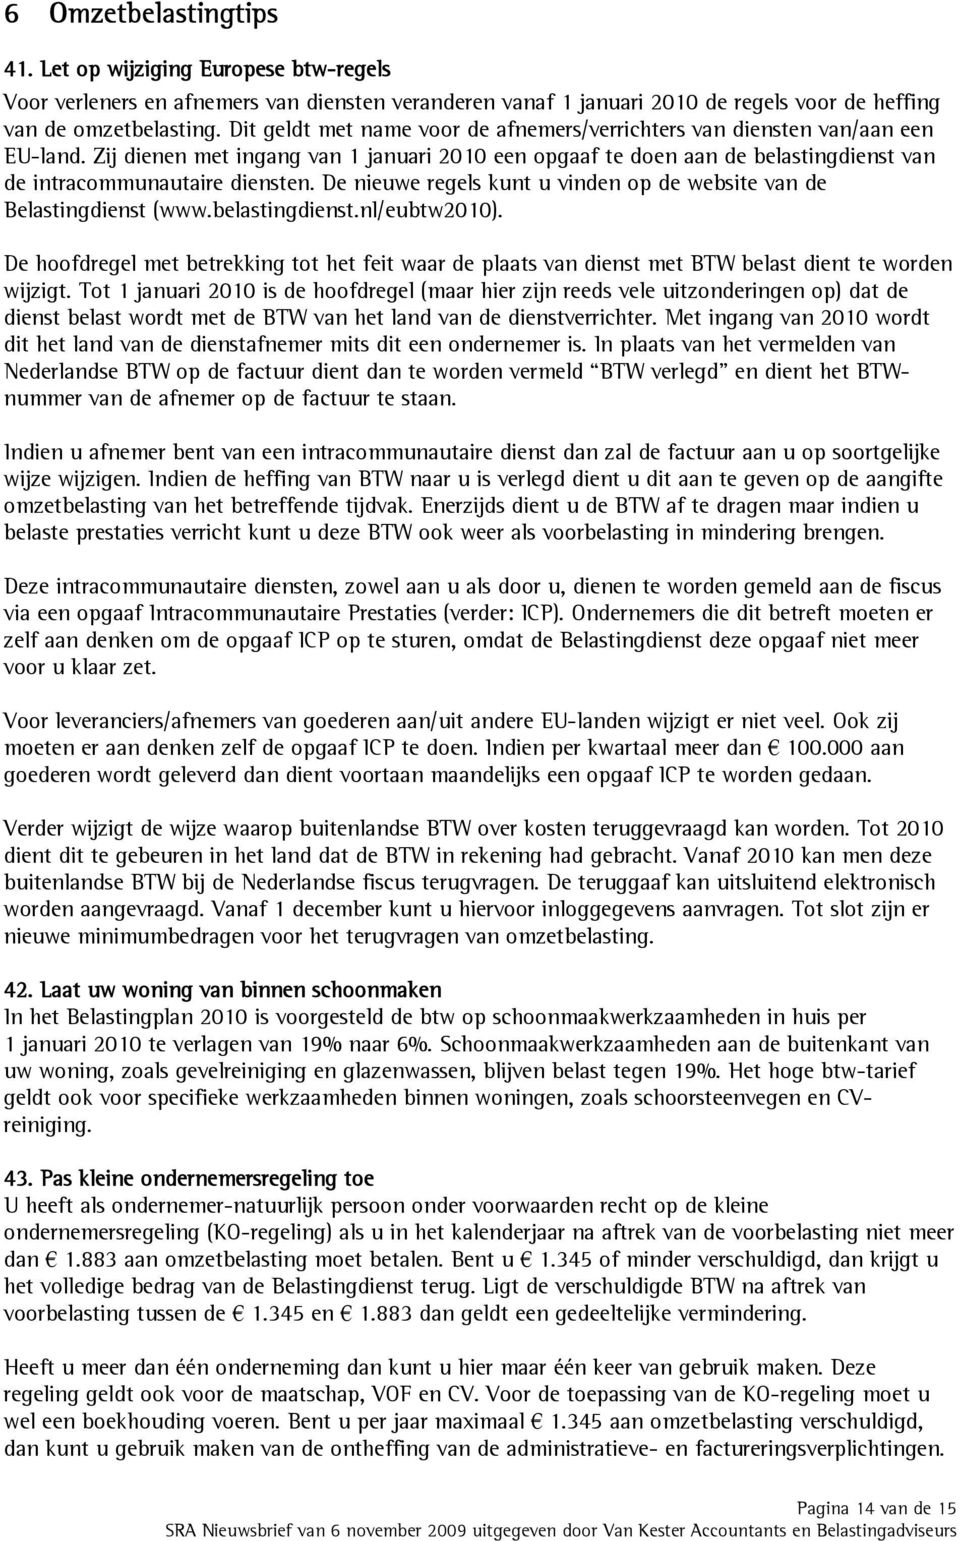 De nieuwe regels kunt u vinden op de website van de Belastingdienst (www.belastingdienst.nl/eubtw2010).